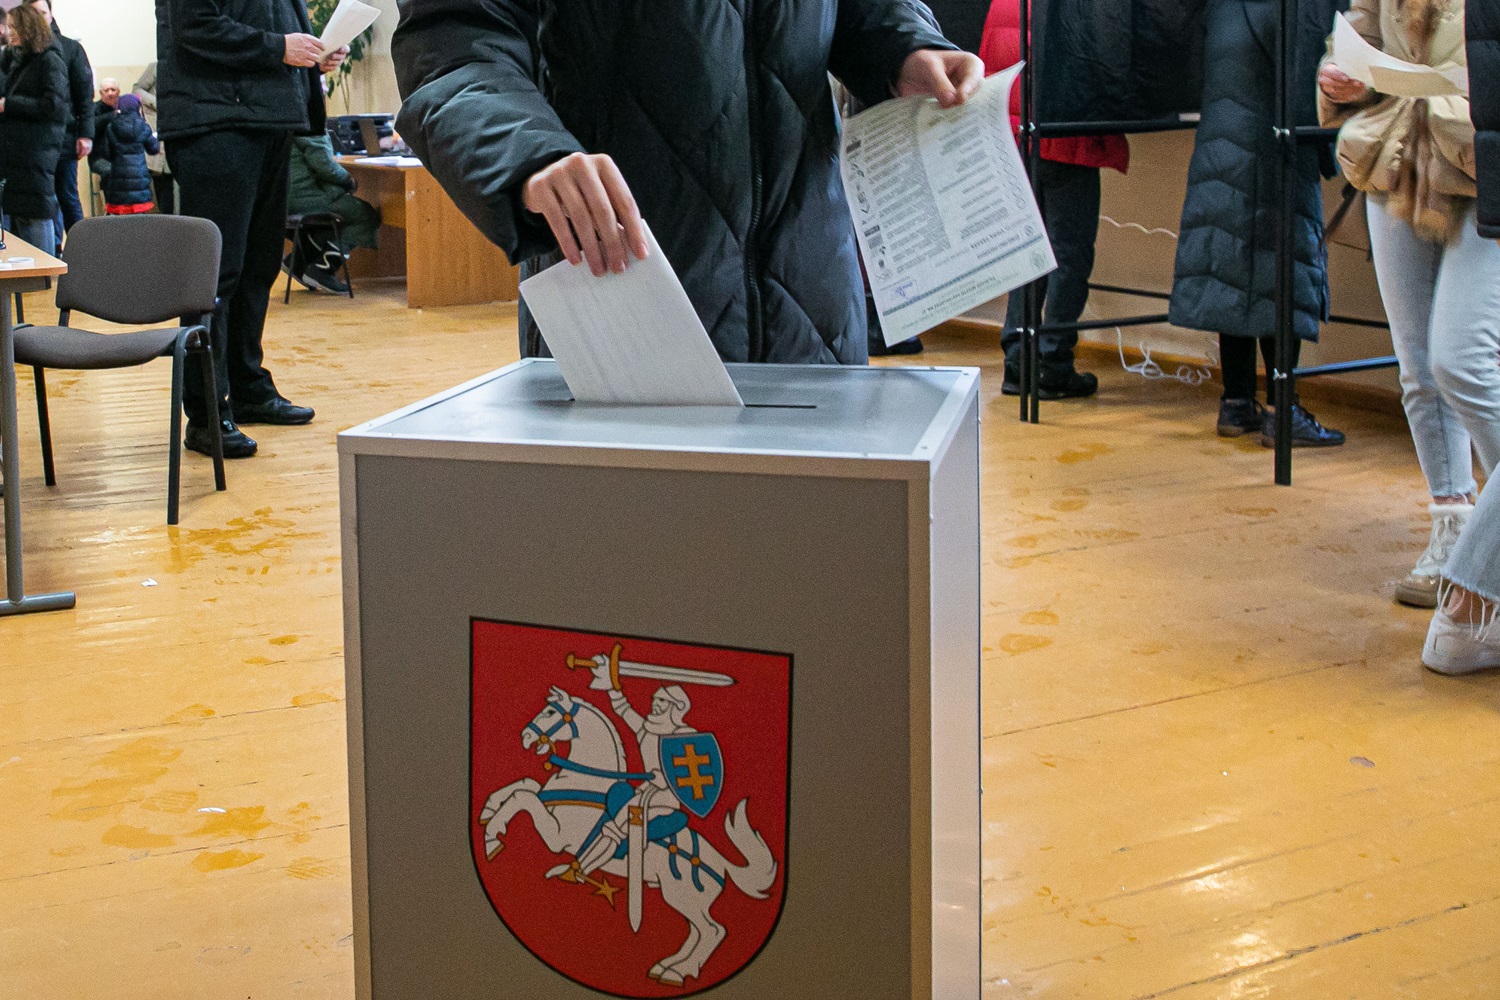 Ketvirtadienis – paskutinė išankstinio balsavimo šalies prezidento rinkimuose diena